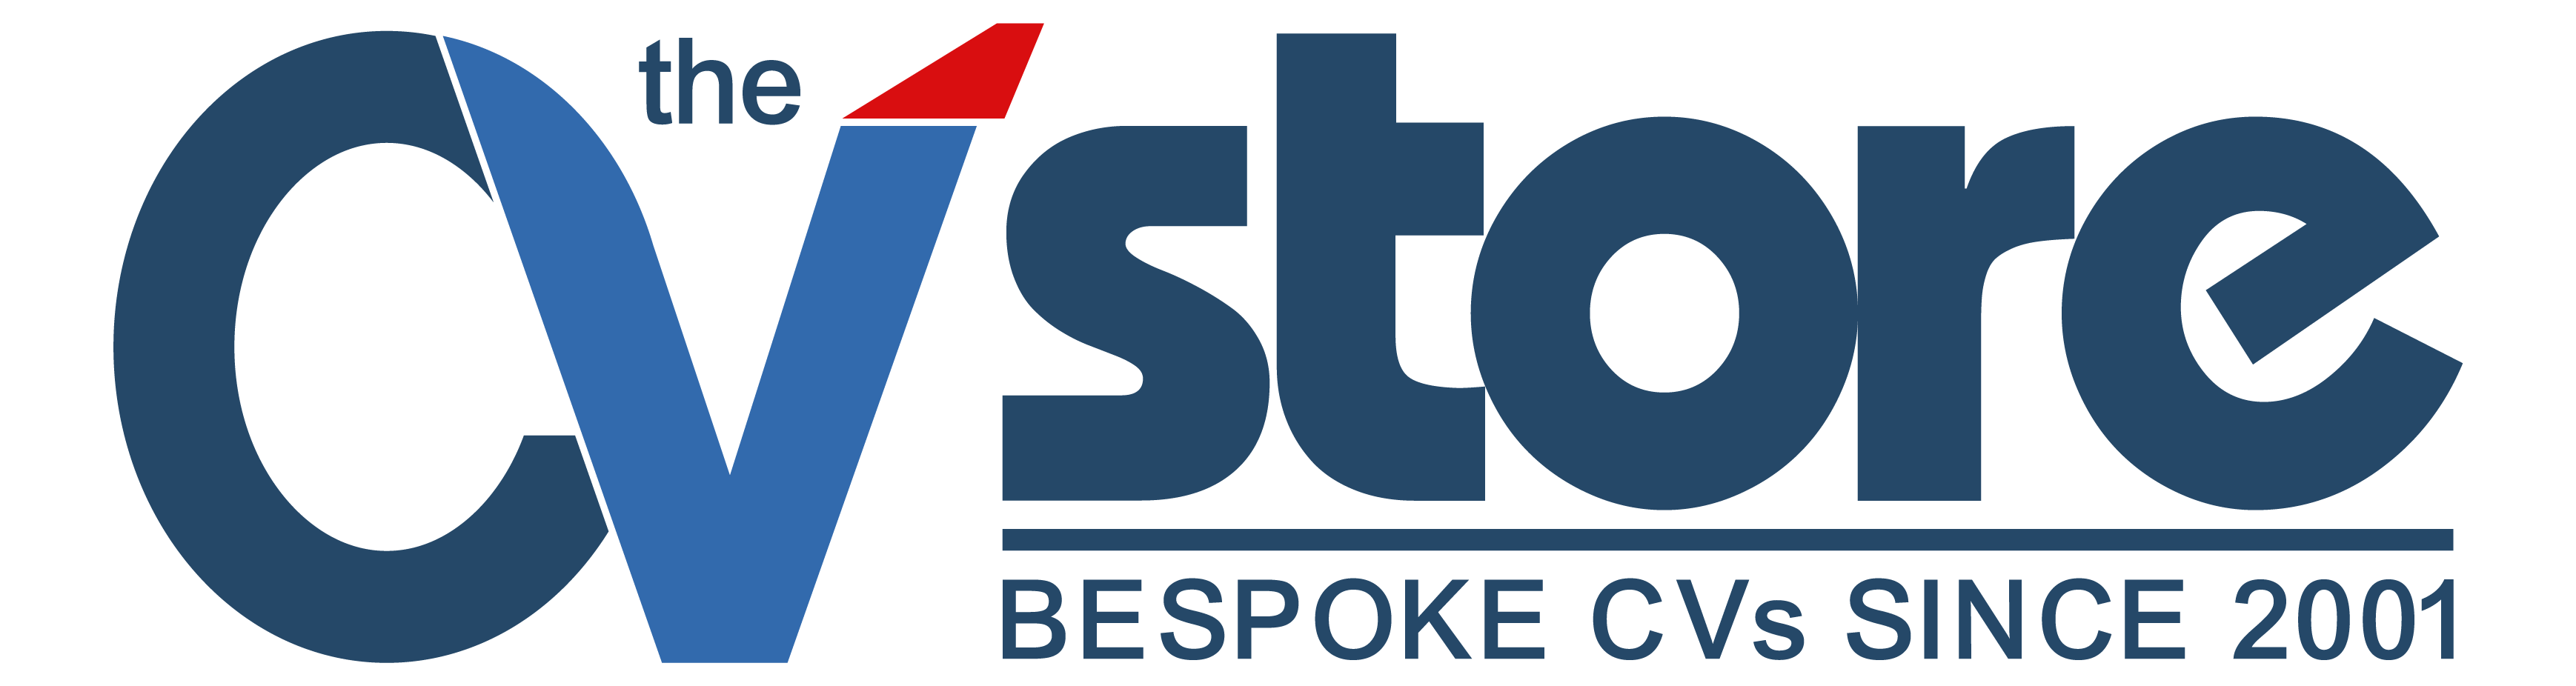 The CV Store Logo